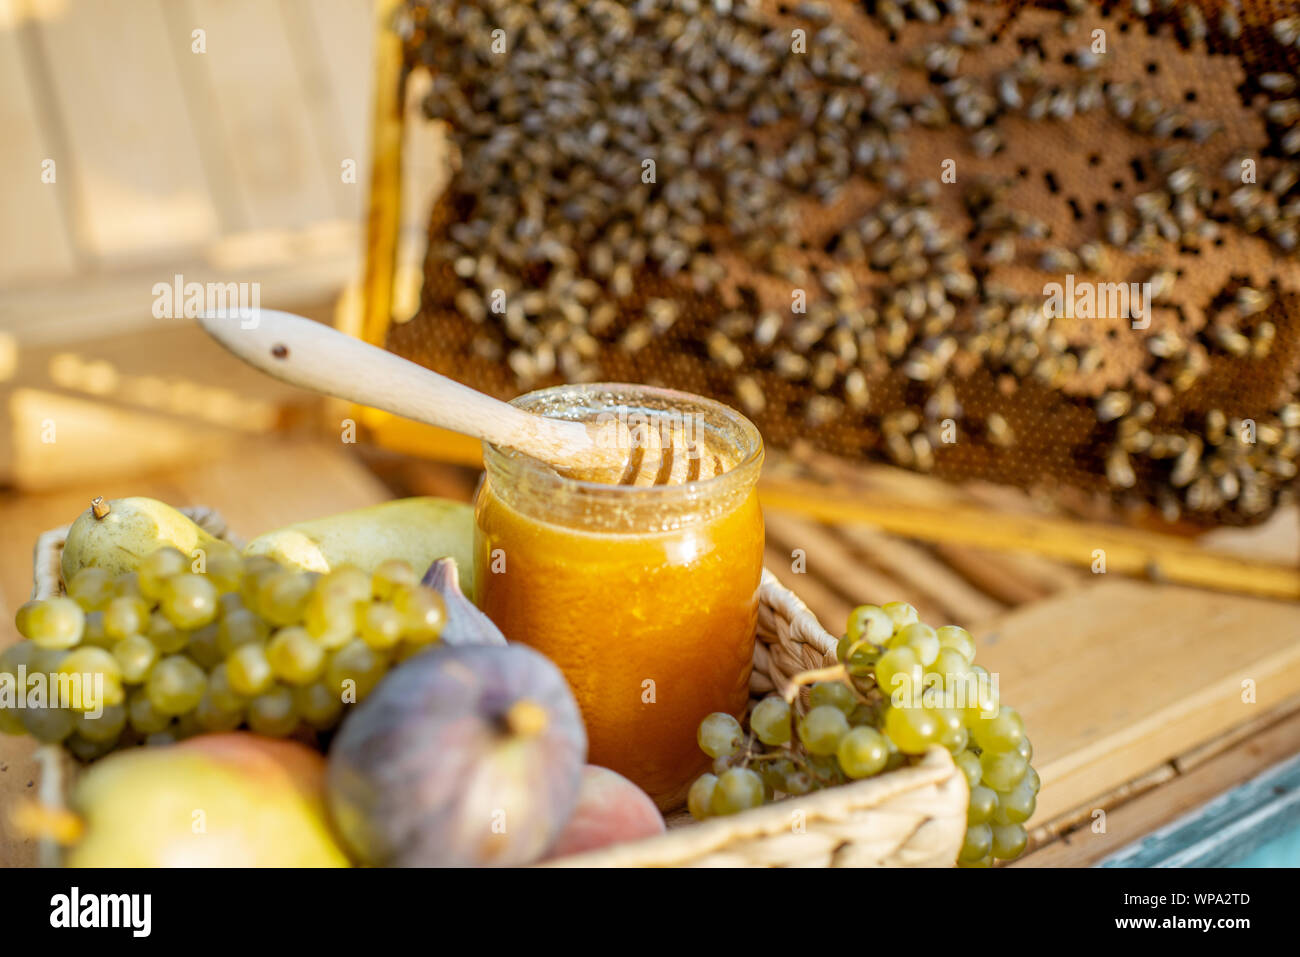 Composizione di frutti dolci e jar con del miele per alveare con il nido d'ape sullo sfondo Foto Stock